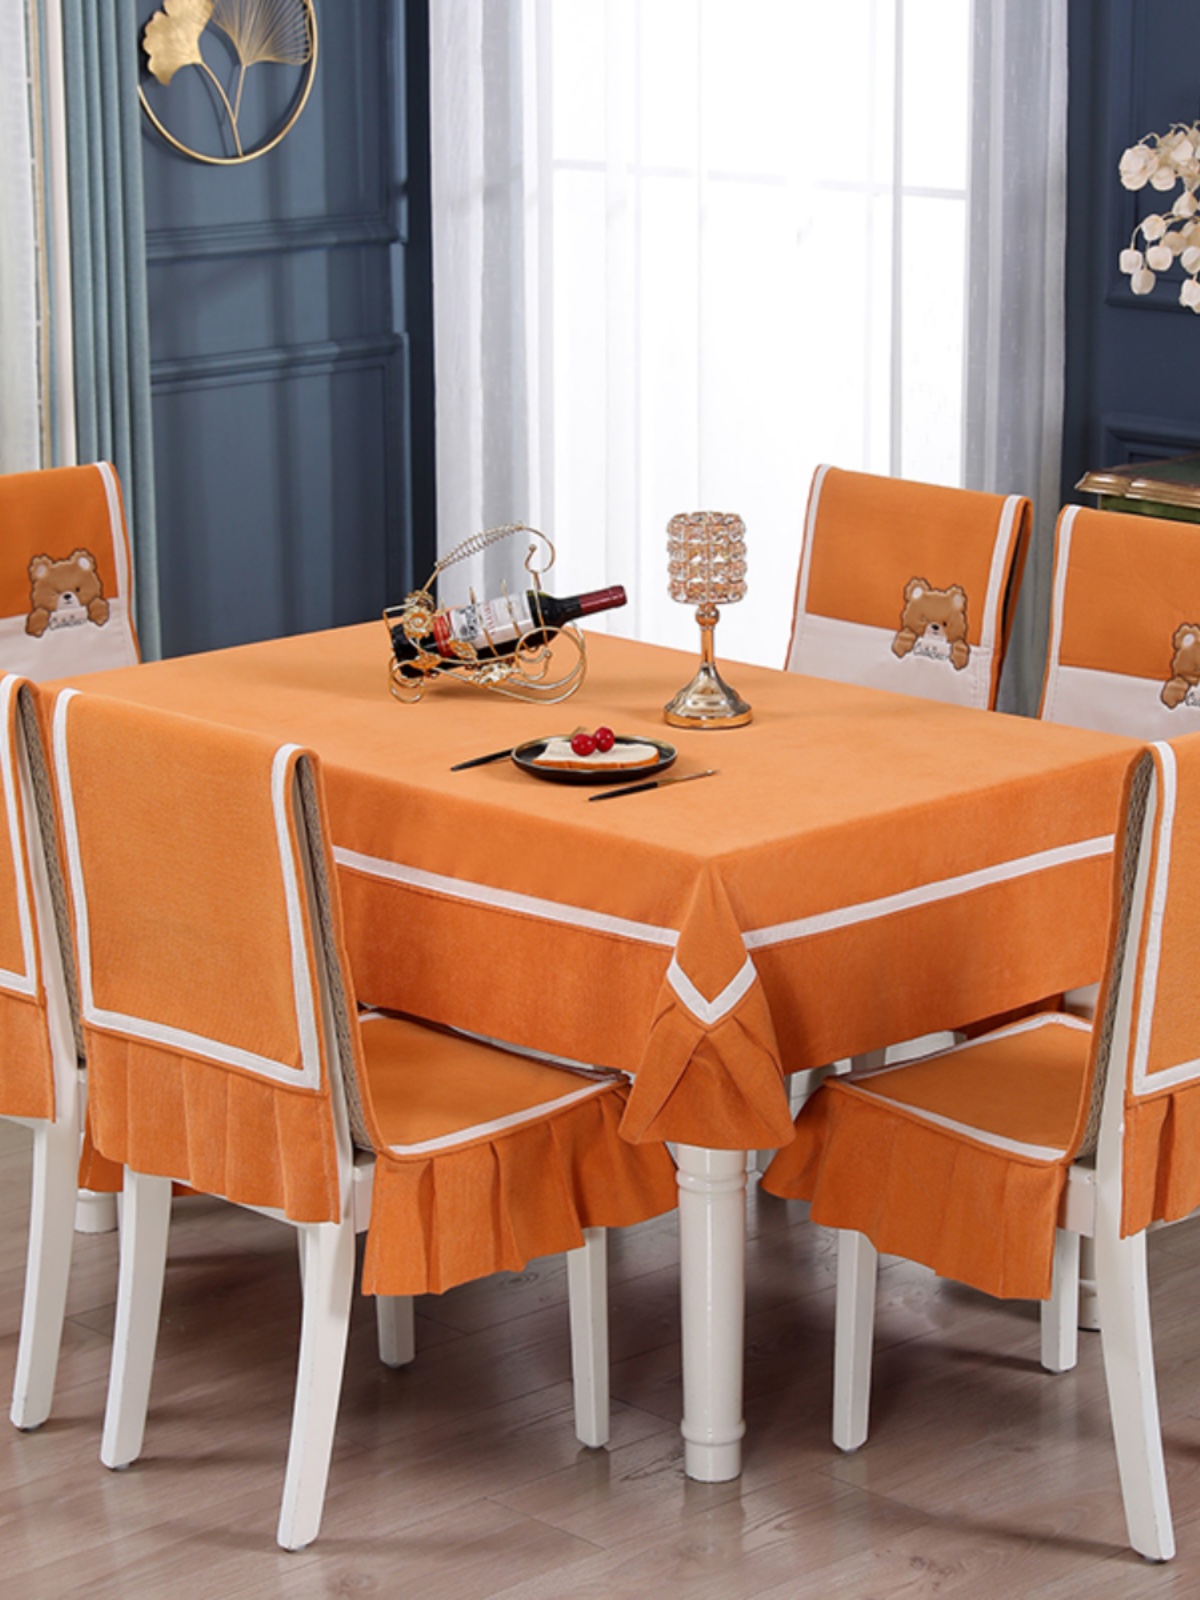 库时尚新款 纯色餐桌布椅套椅垫椅子套罩家用简约北欧餐桌布艺厂